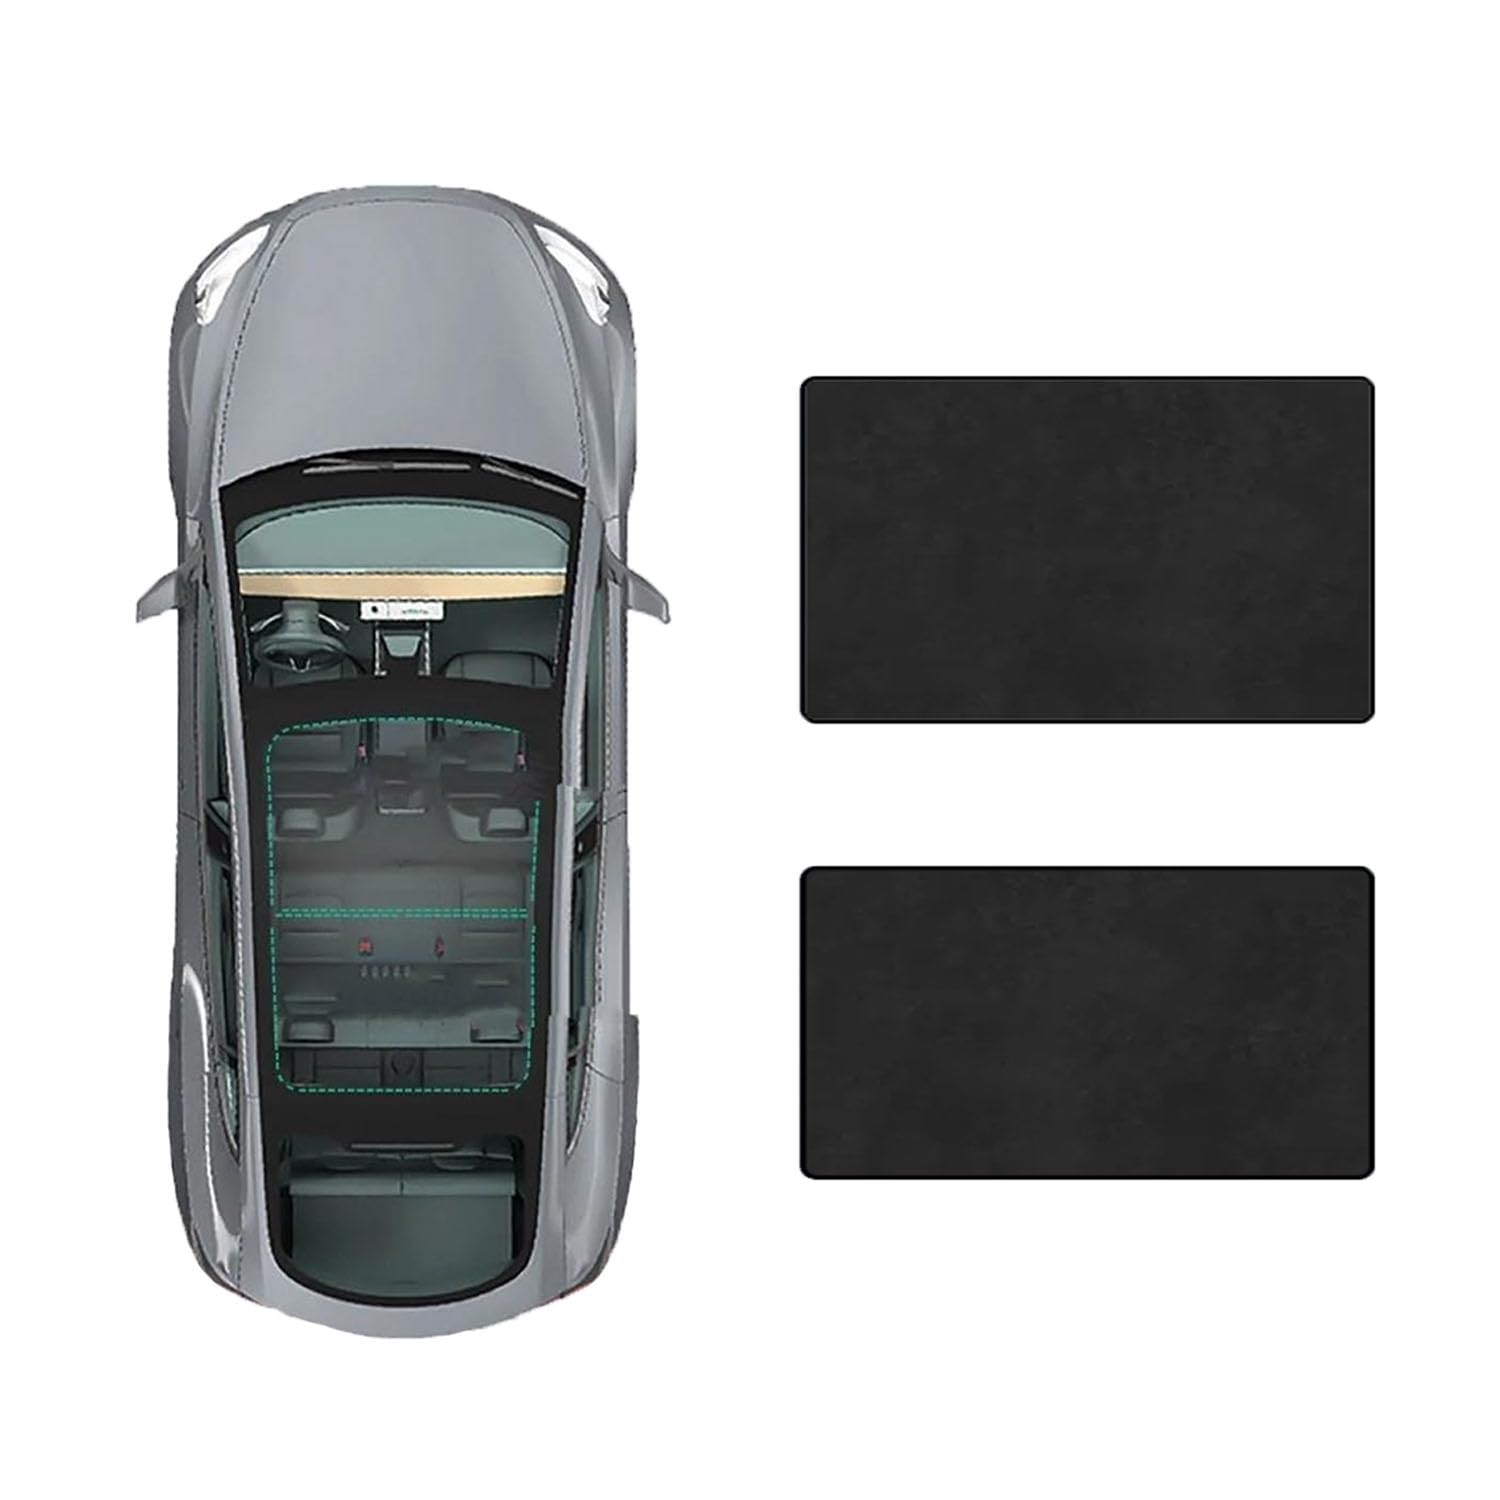 Auto-Schiebedach-Beschattung Für Audi Q5-2017,Glas-Schiebedach-Sonnenschutz blockiert effektiv schädliche UV-Strahlen,D-Black Suede von FENVY